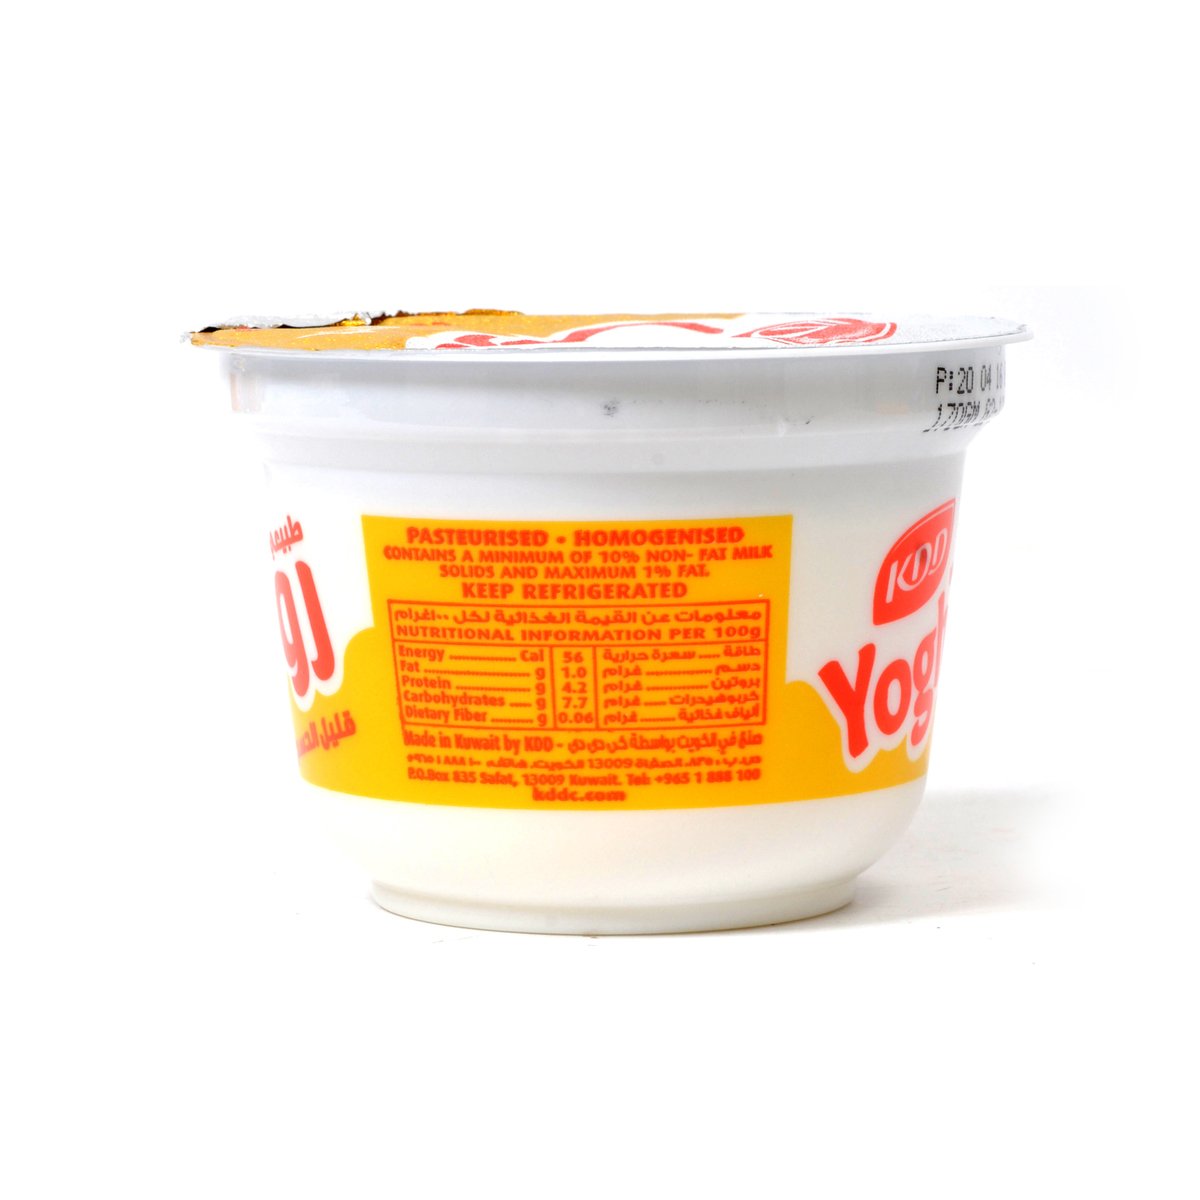 KDD Natural Yoghurt Low Fat 6 x 170g